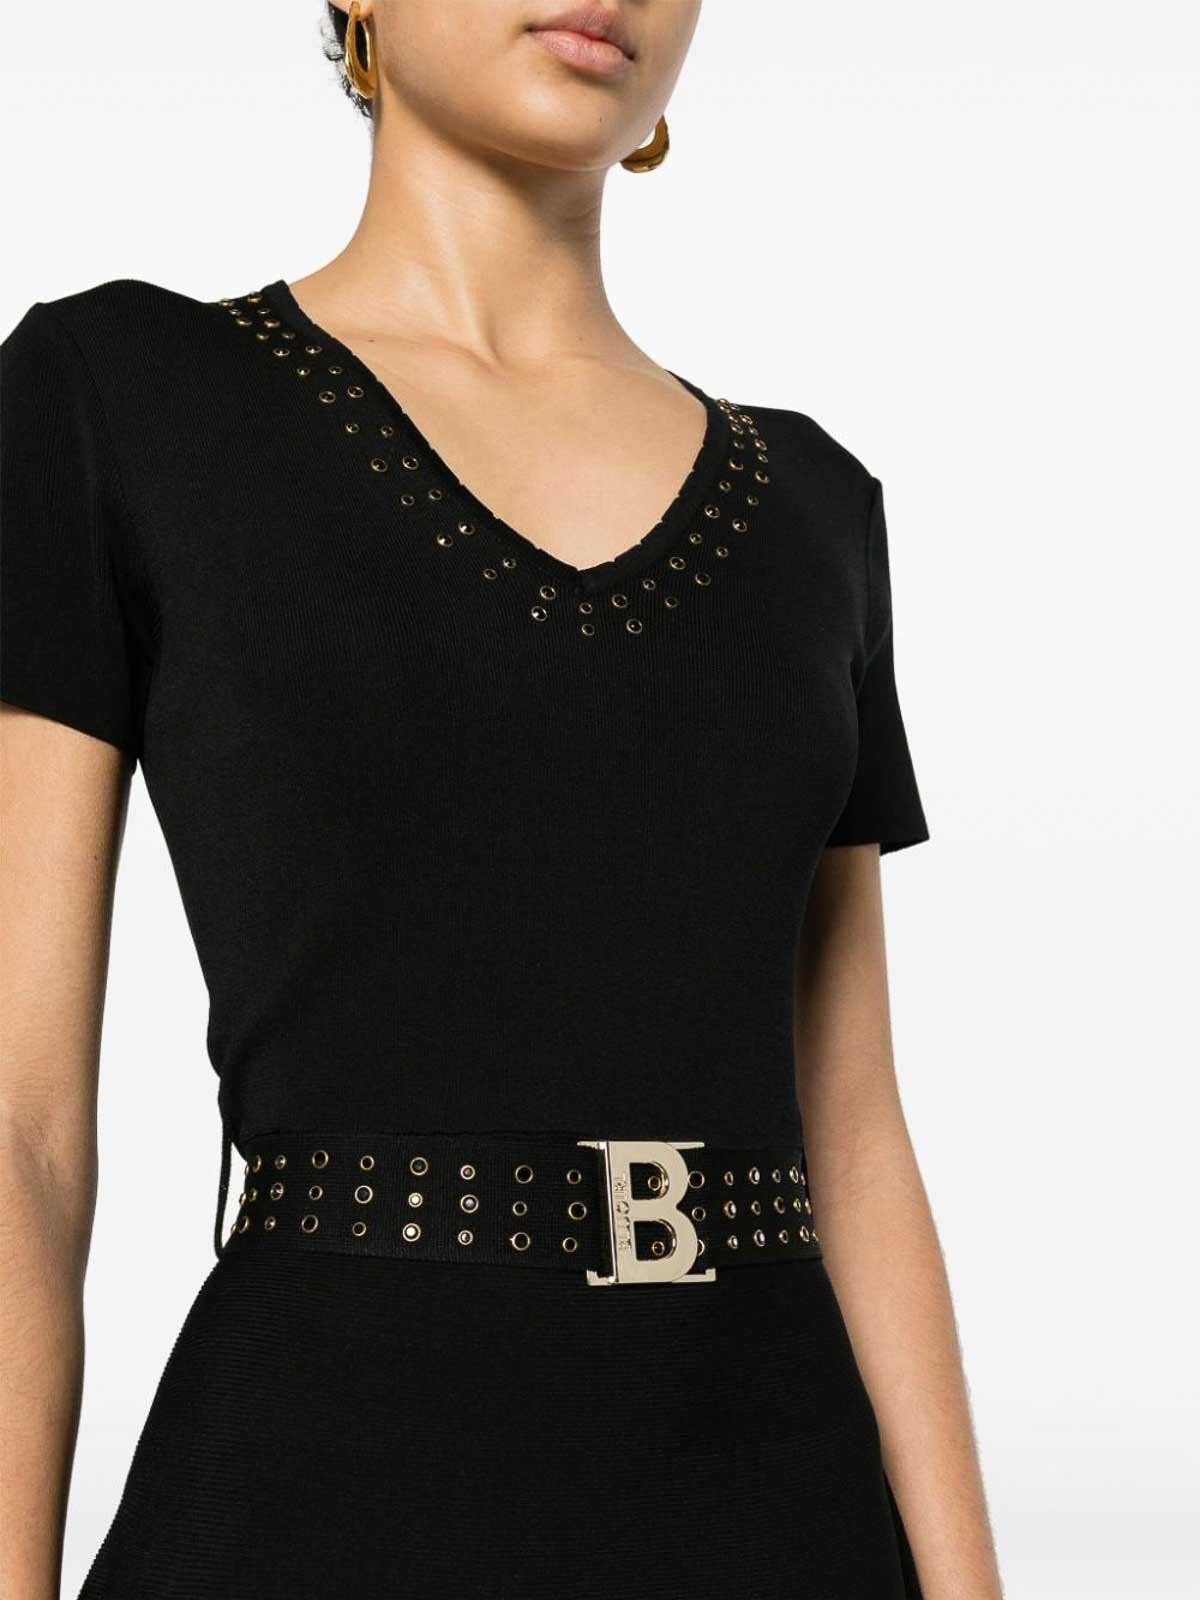 Shop Blugirl Black Stretch Ribbed Embellished Dress